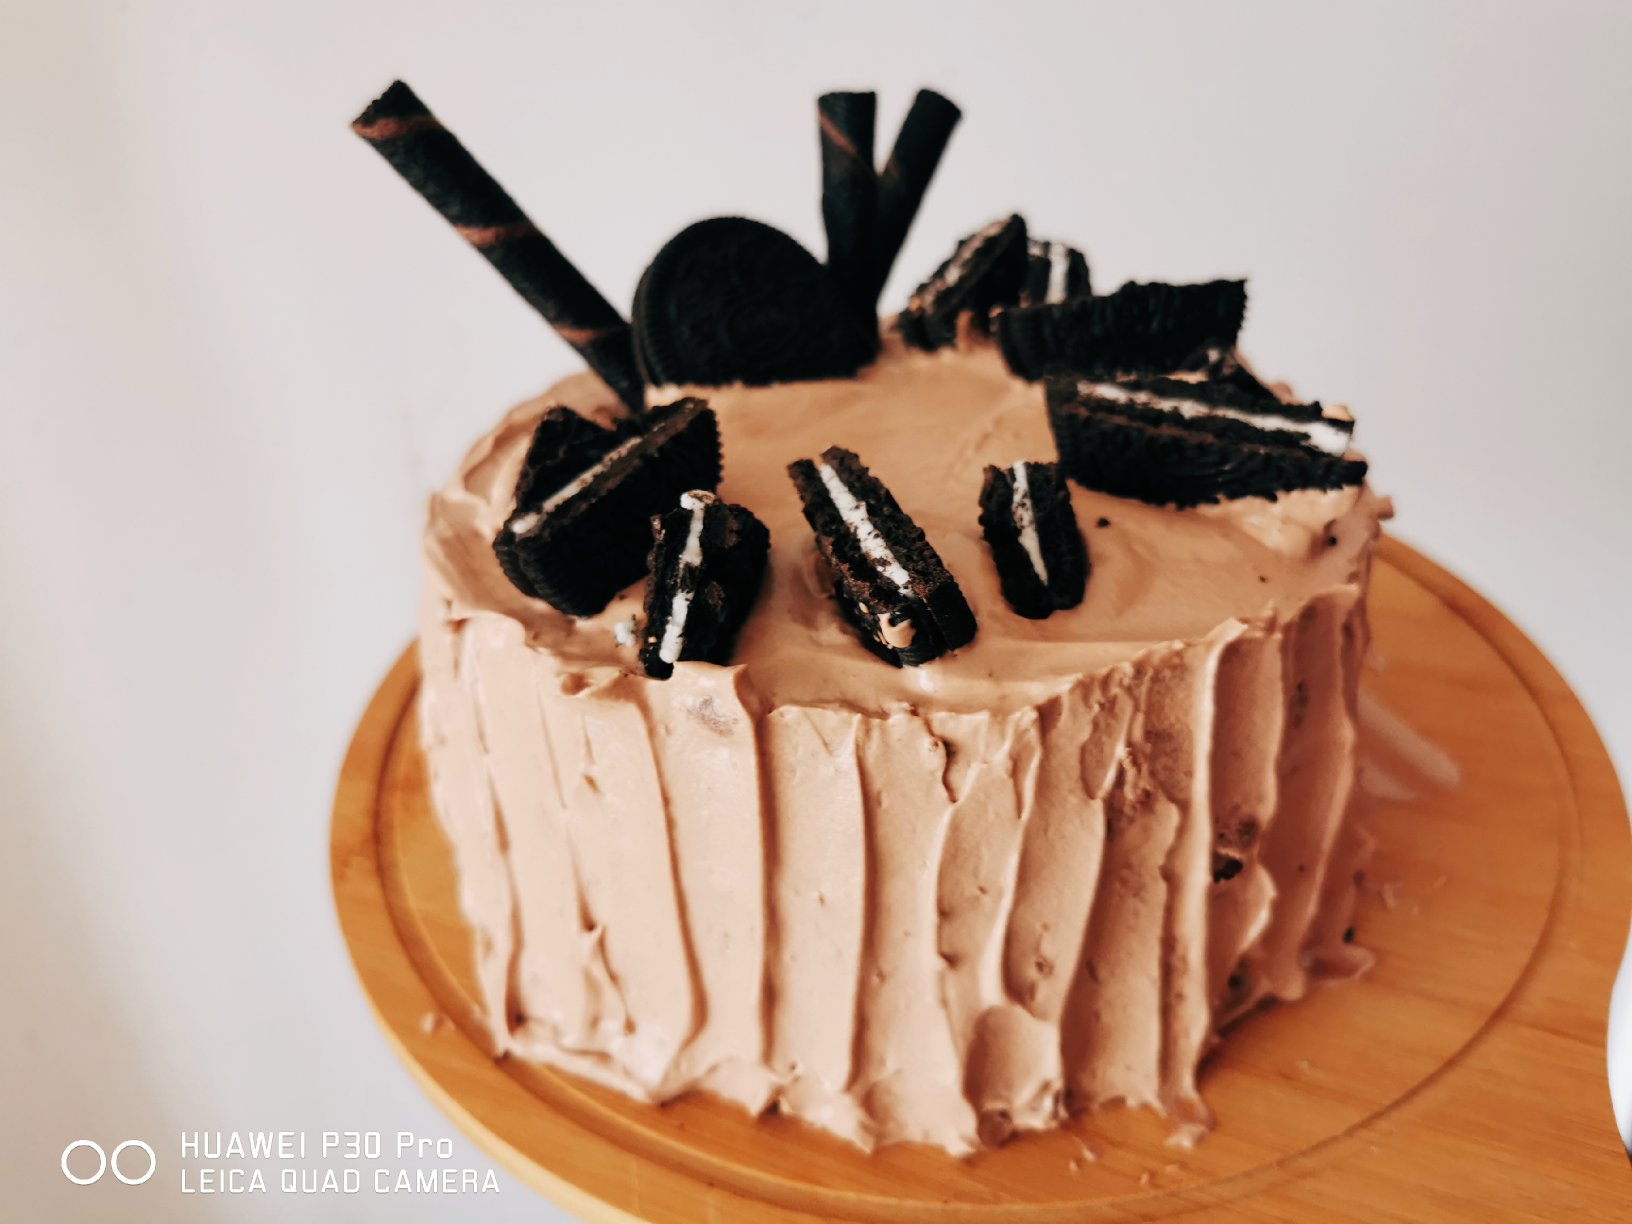 巧克力奶油蛋糕/巧克力奶油的操作手法。/「戚风及其衍生」烘焙视频蛋糕篇2